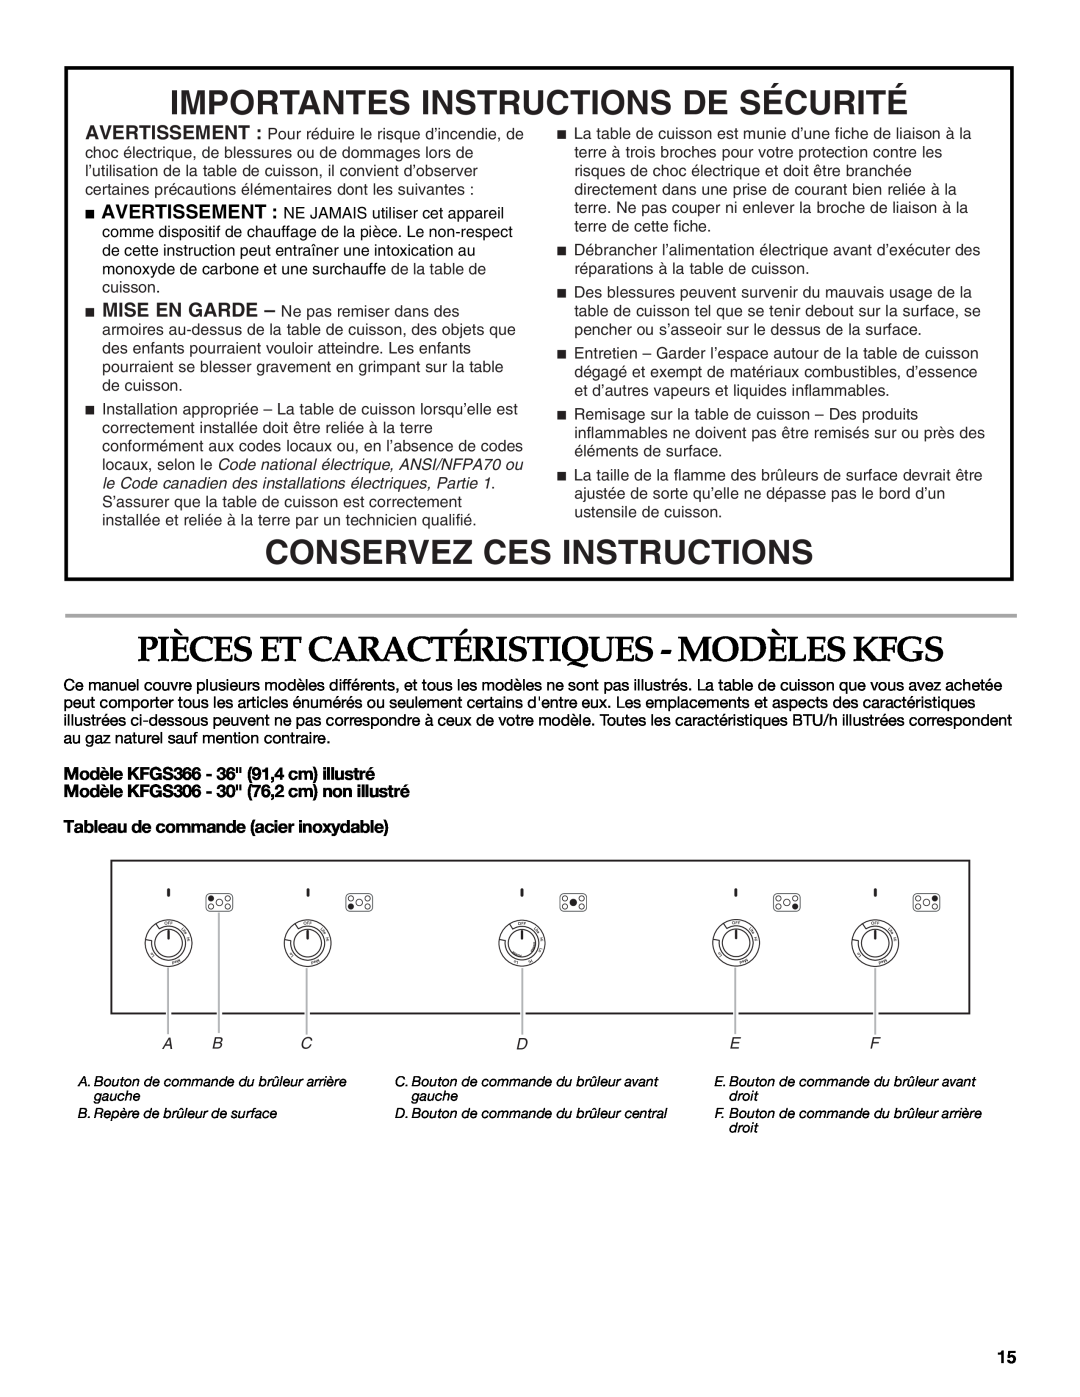 KitchenAid KFGS306, KFGU766, KFGU706 manual Pièces Et Caractéristiques - Modèles Kfgs, Importantes Instructions De Sécurité 